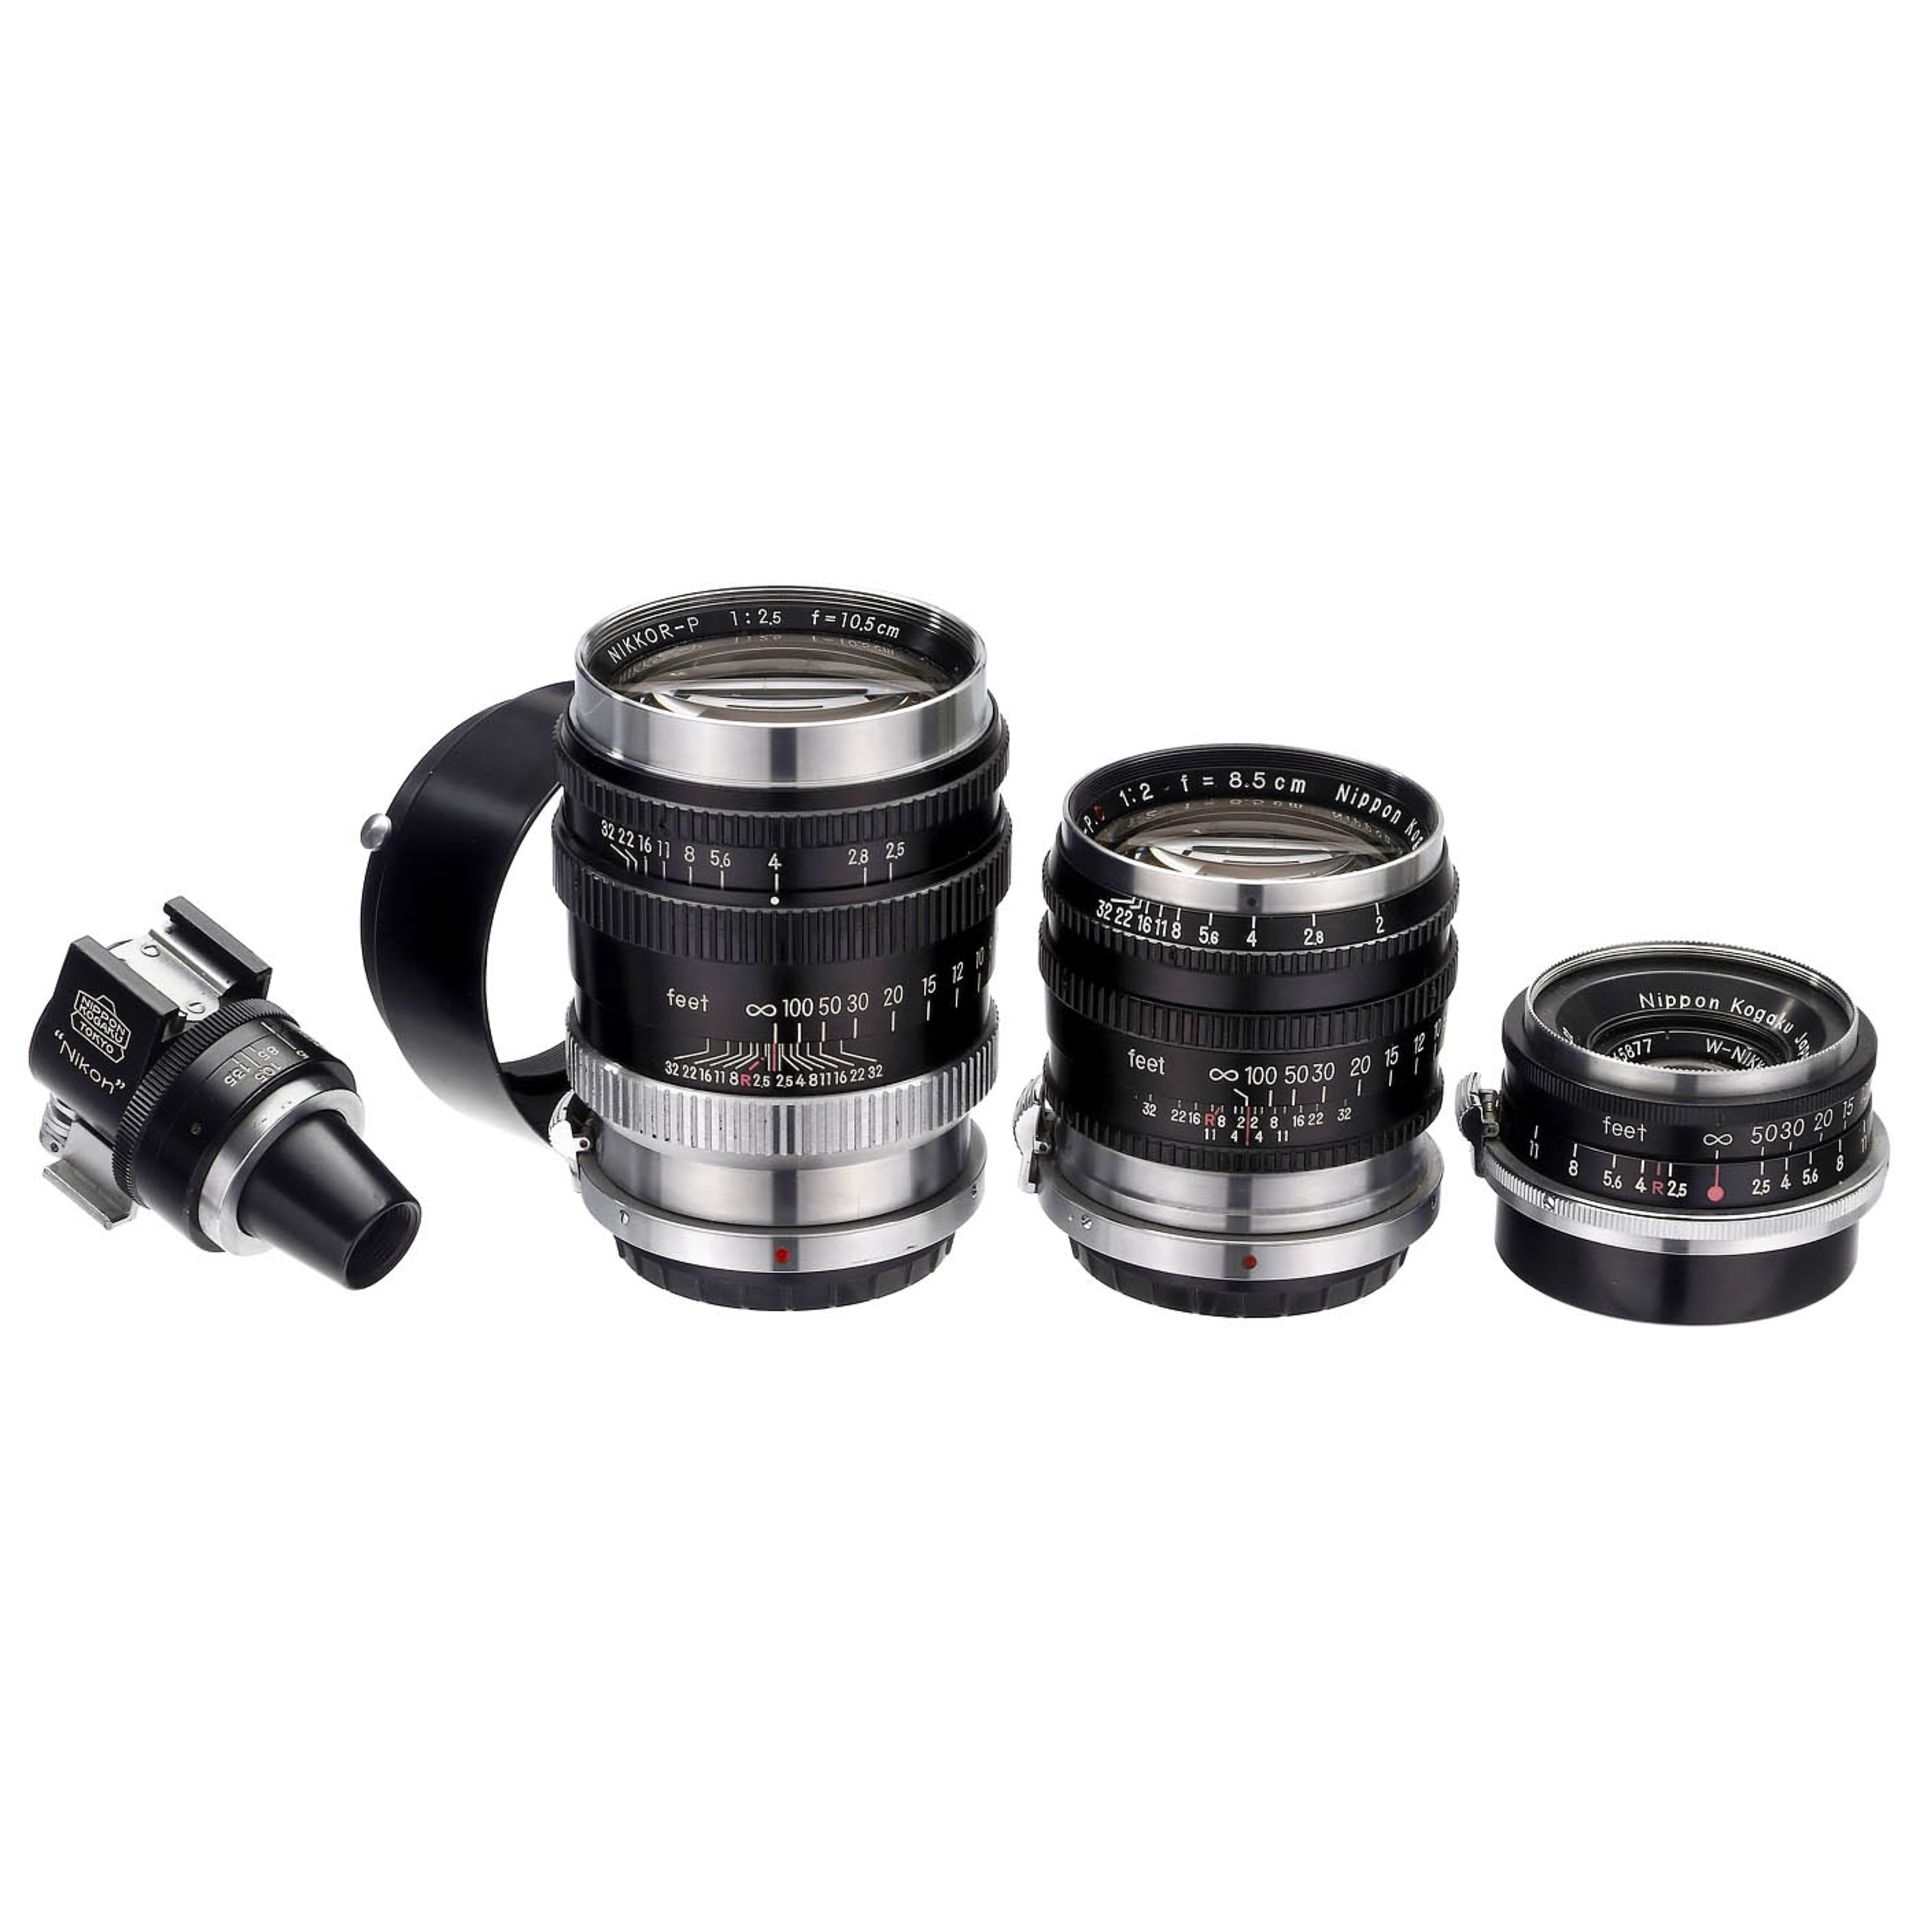 Nikkor Lenses for Nikon Rangefinder Cameras